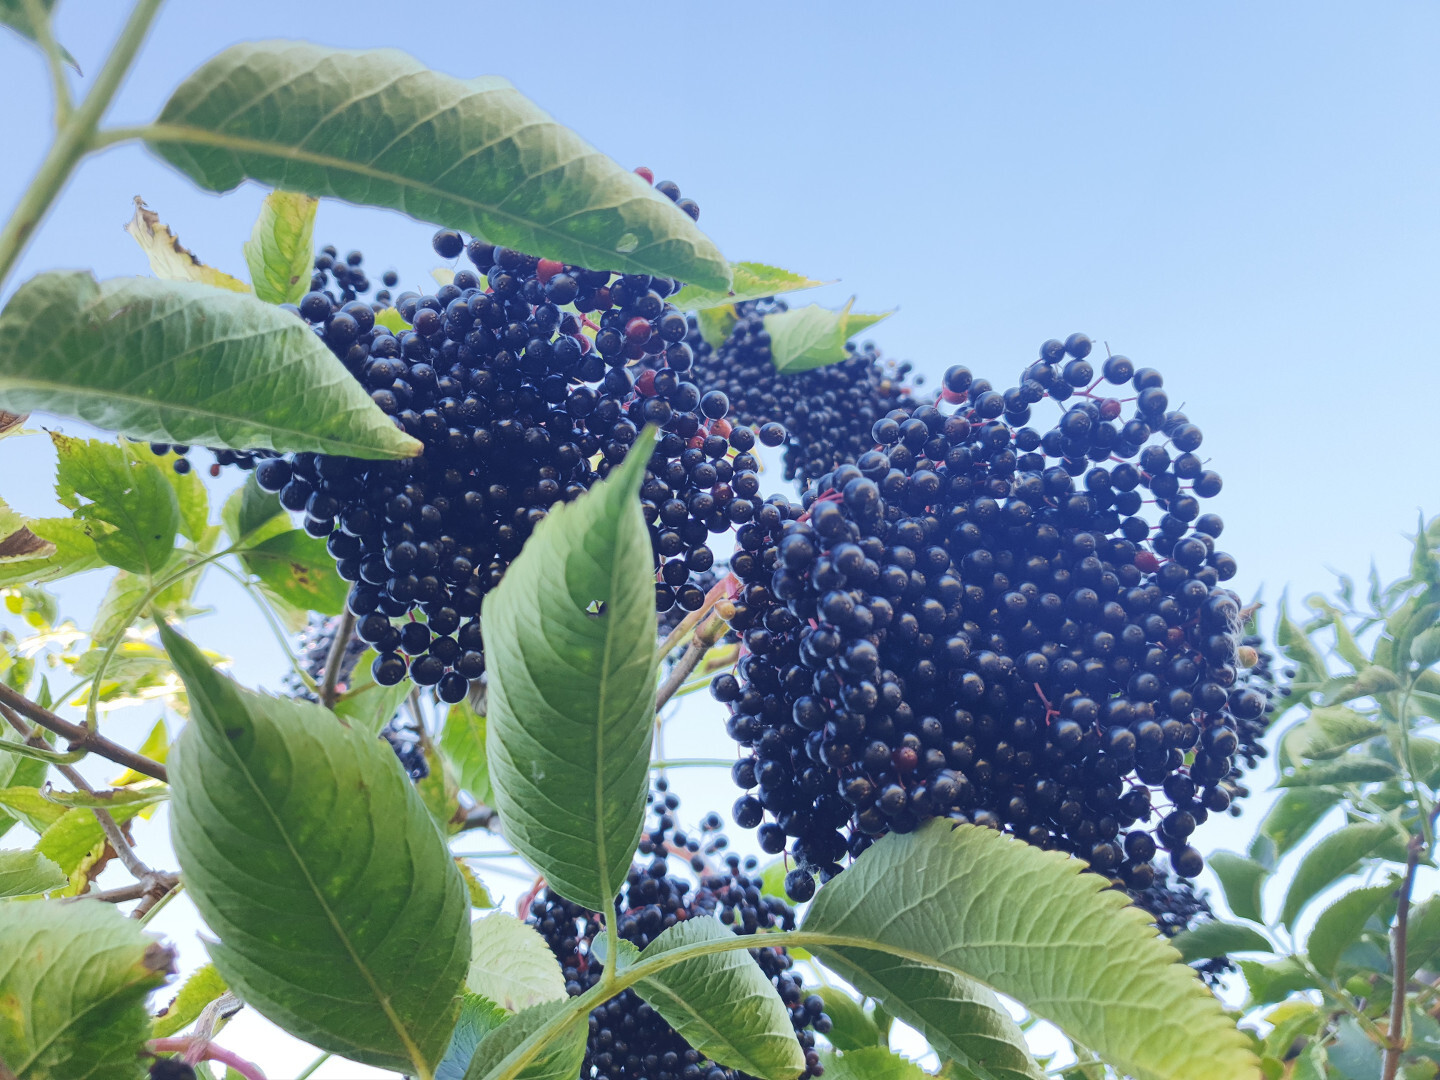 Owoce czarnego bzu na krzaku, na pierwszym planie widać liście a w tle błękitne niebo